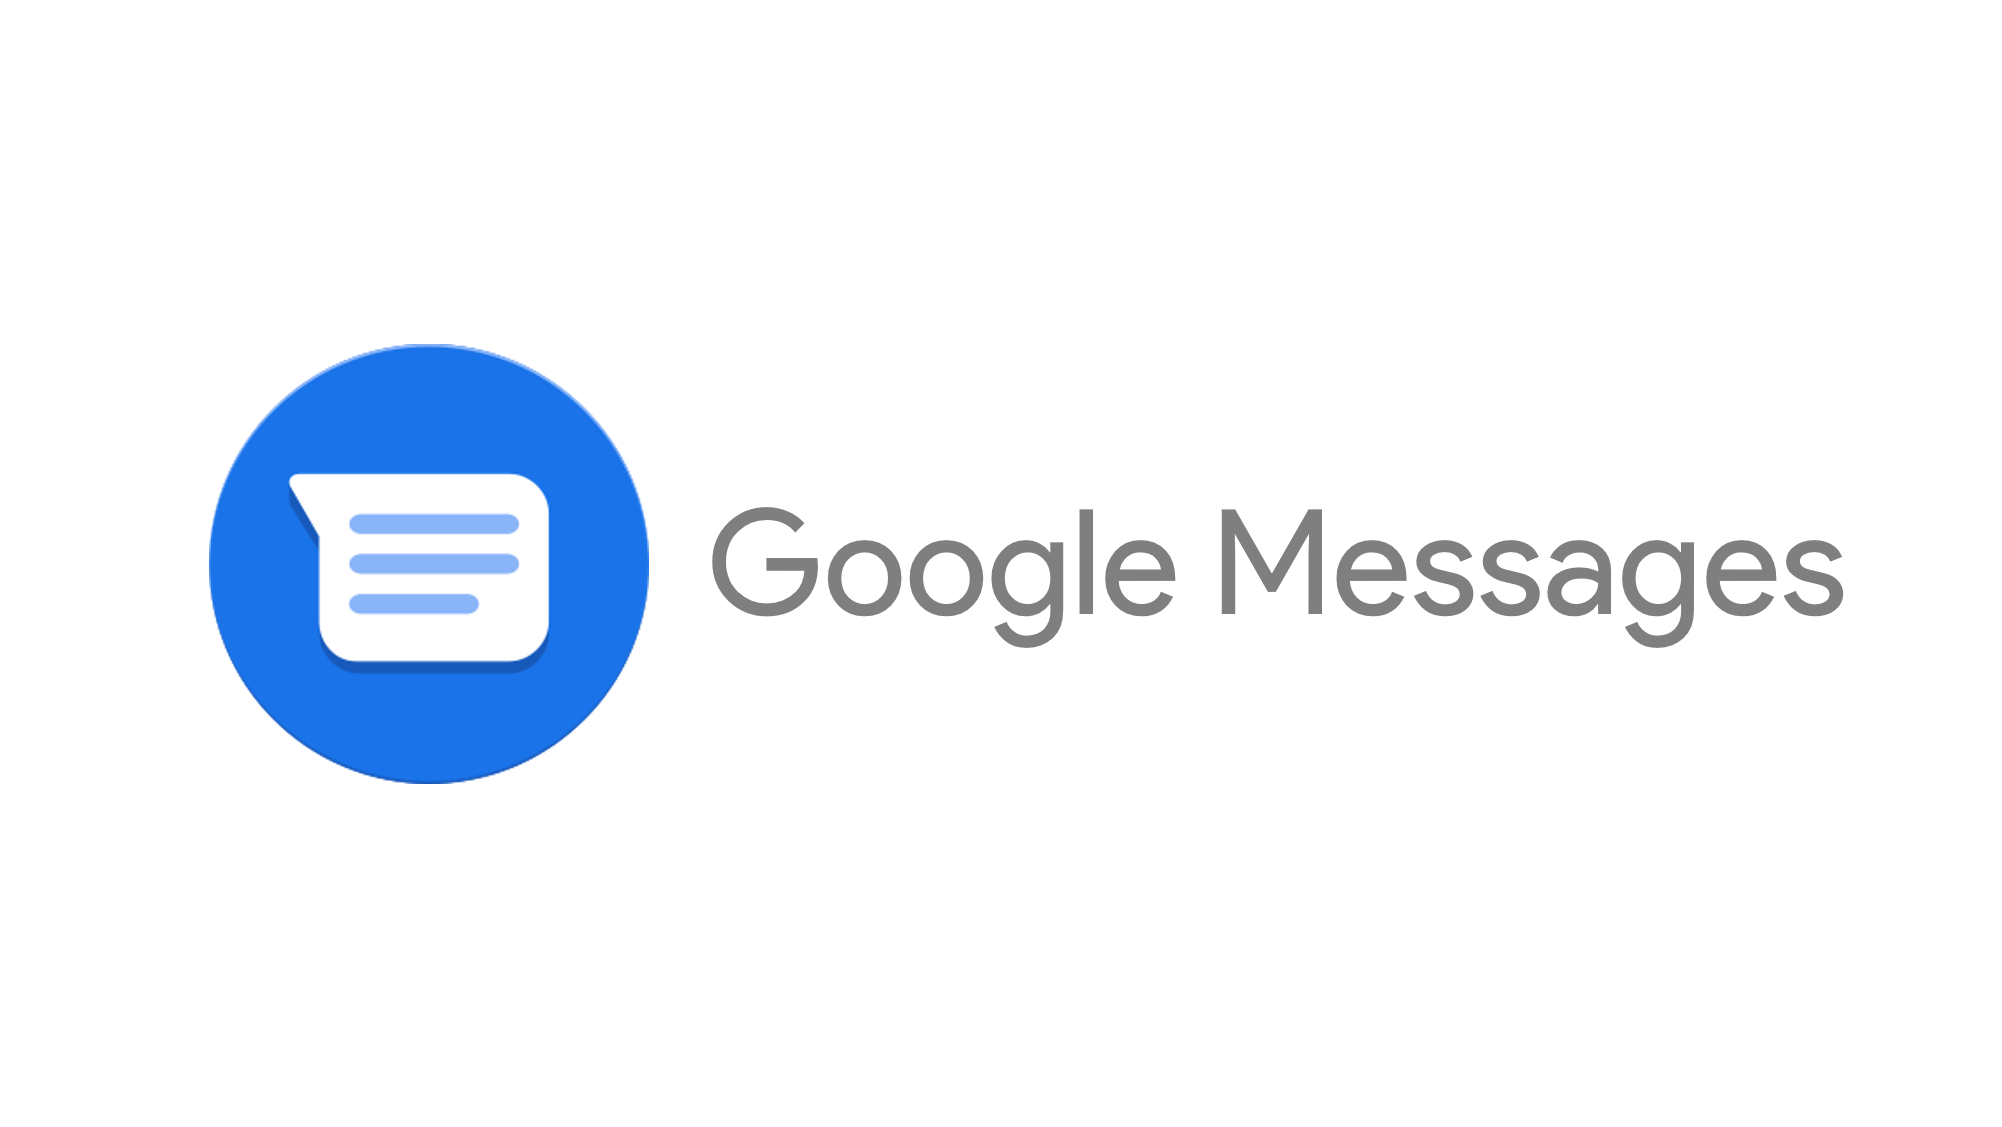 Google messenger. Google messages. Гоогле месагес мессагес гугл. Лого сообщения Google. Google messages app.